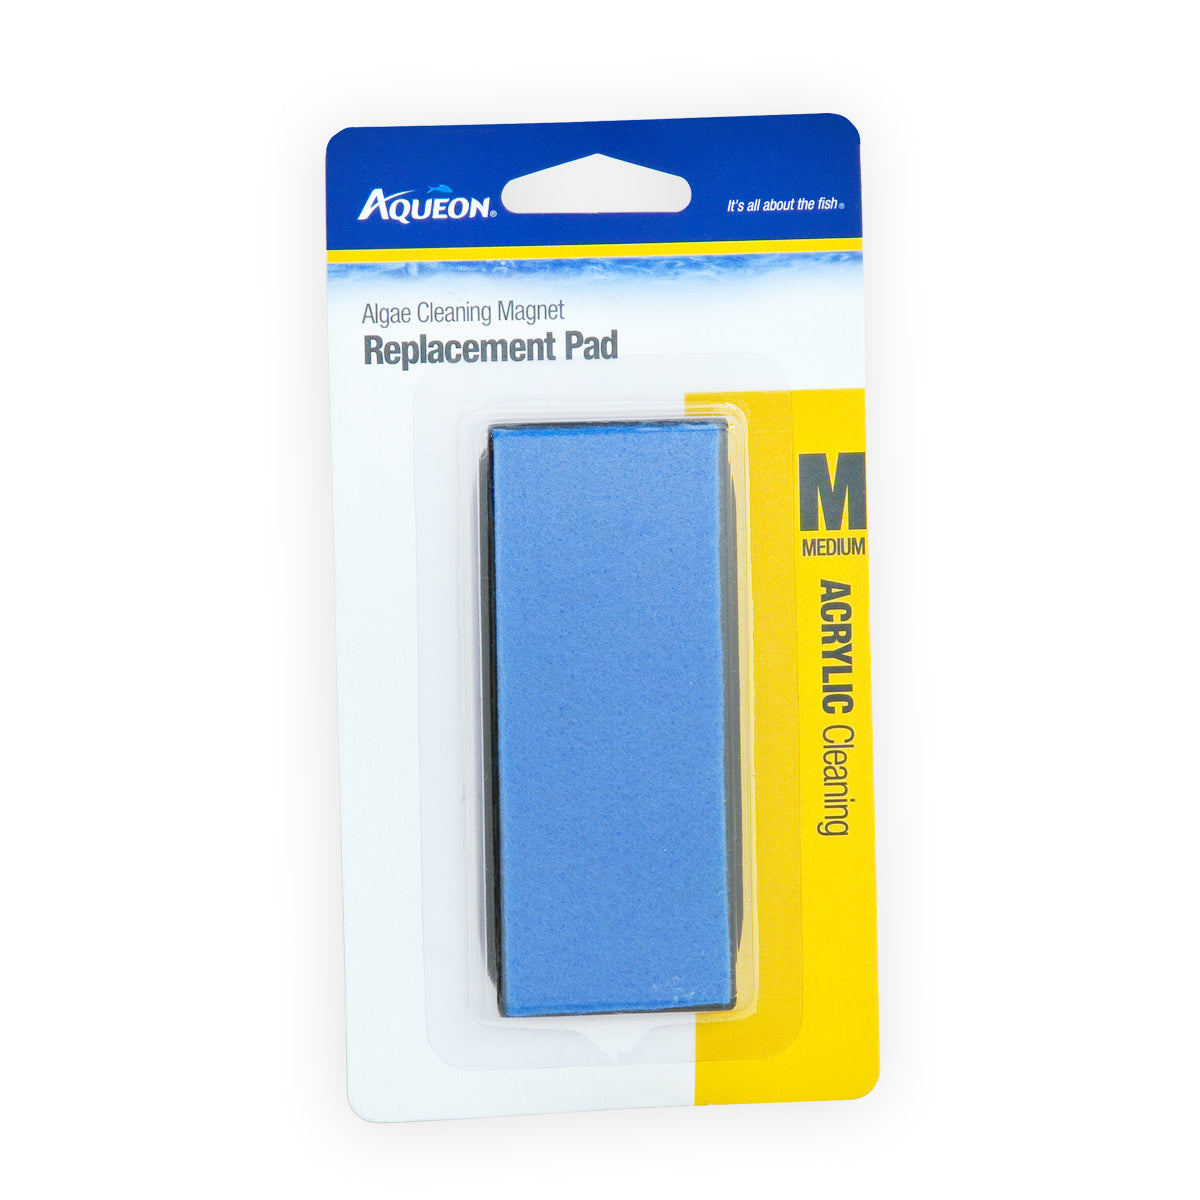 Aqueon Algae Cleaning Magnet Replacement Pad Acrylic - Medium